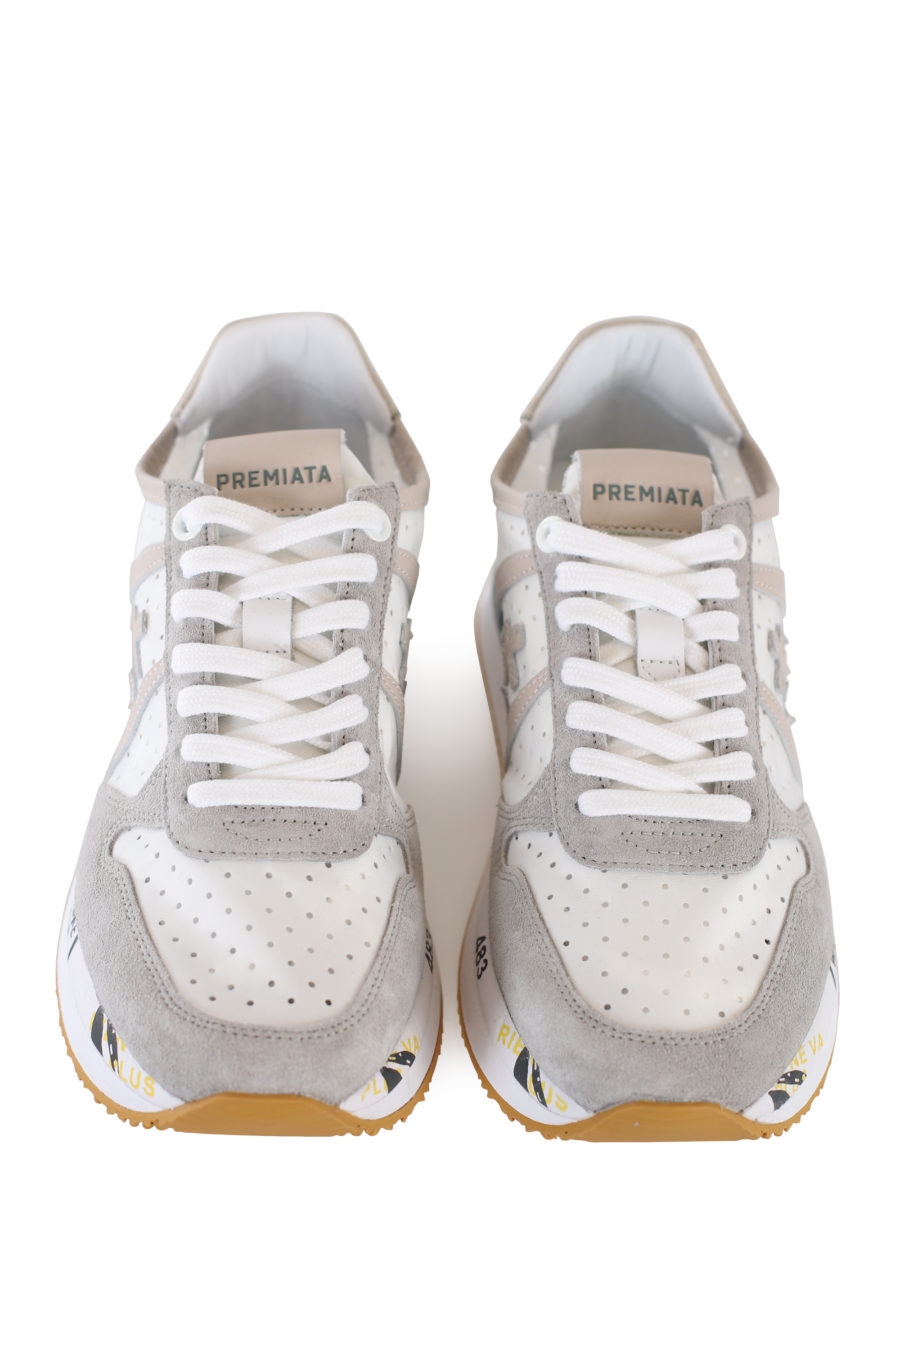 Zapatillas blancas y grises con tejido transpirable - IMG 1667